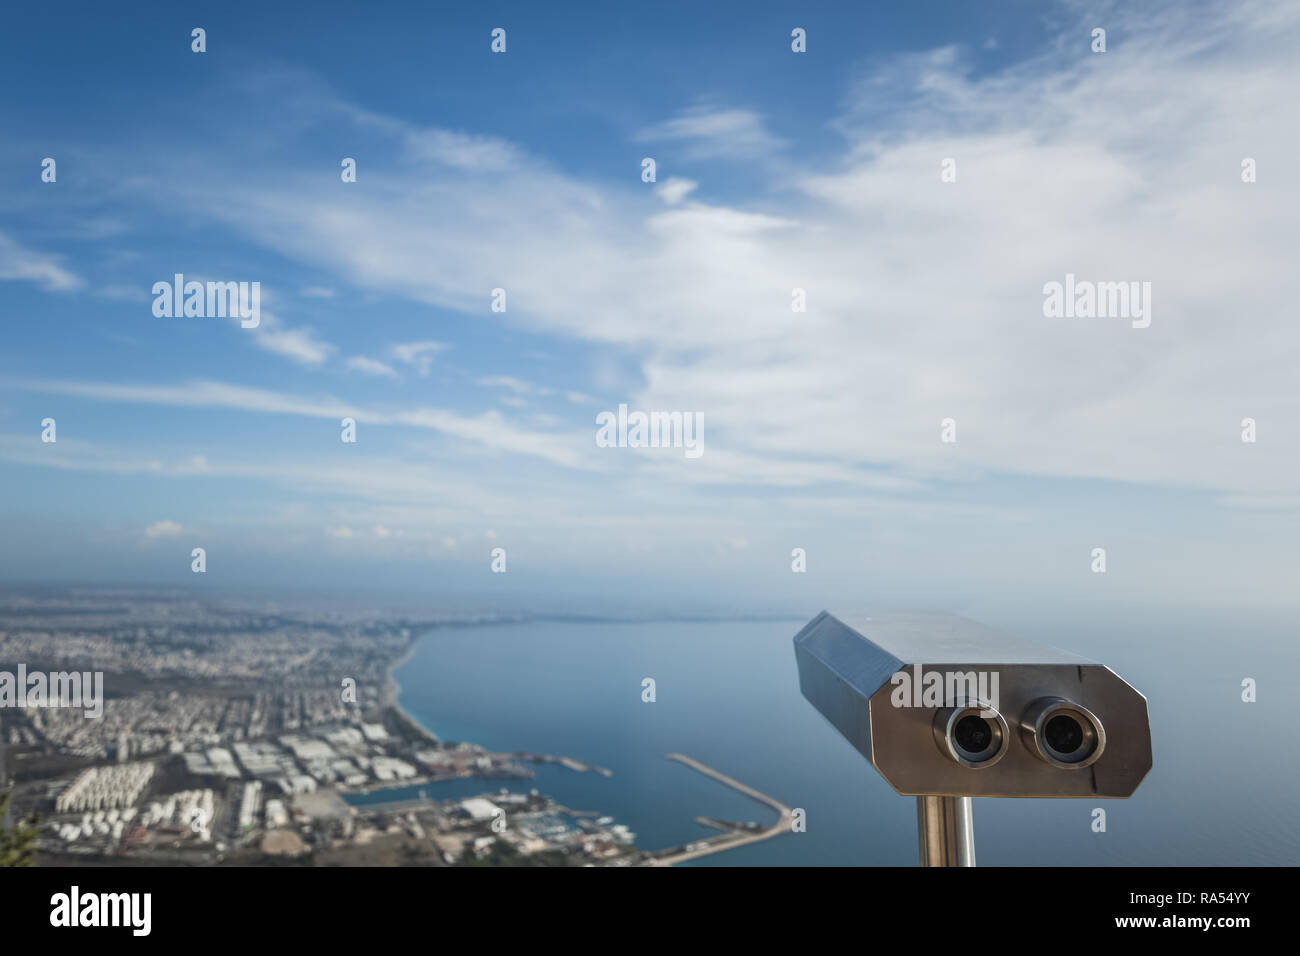 Metall grau Münzautomaten Teleskop am schönen Sommer Panoramablick auf Stadtbild, blauer Himmel und Meer Wasser isoliert. Türkei, Antalya Stadt. Stockfoto